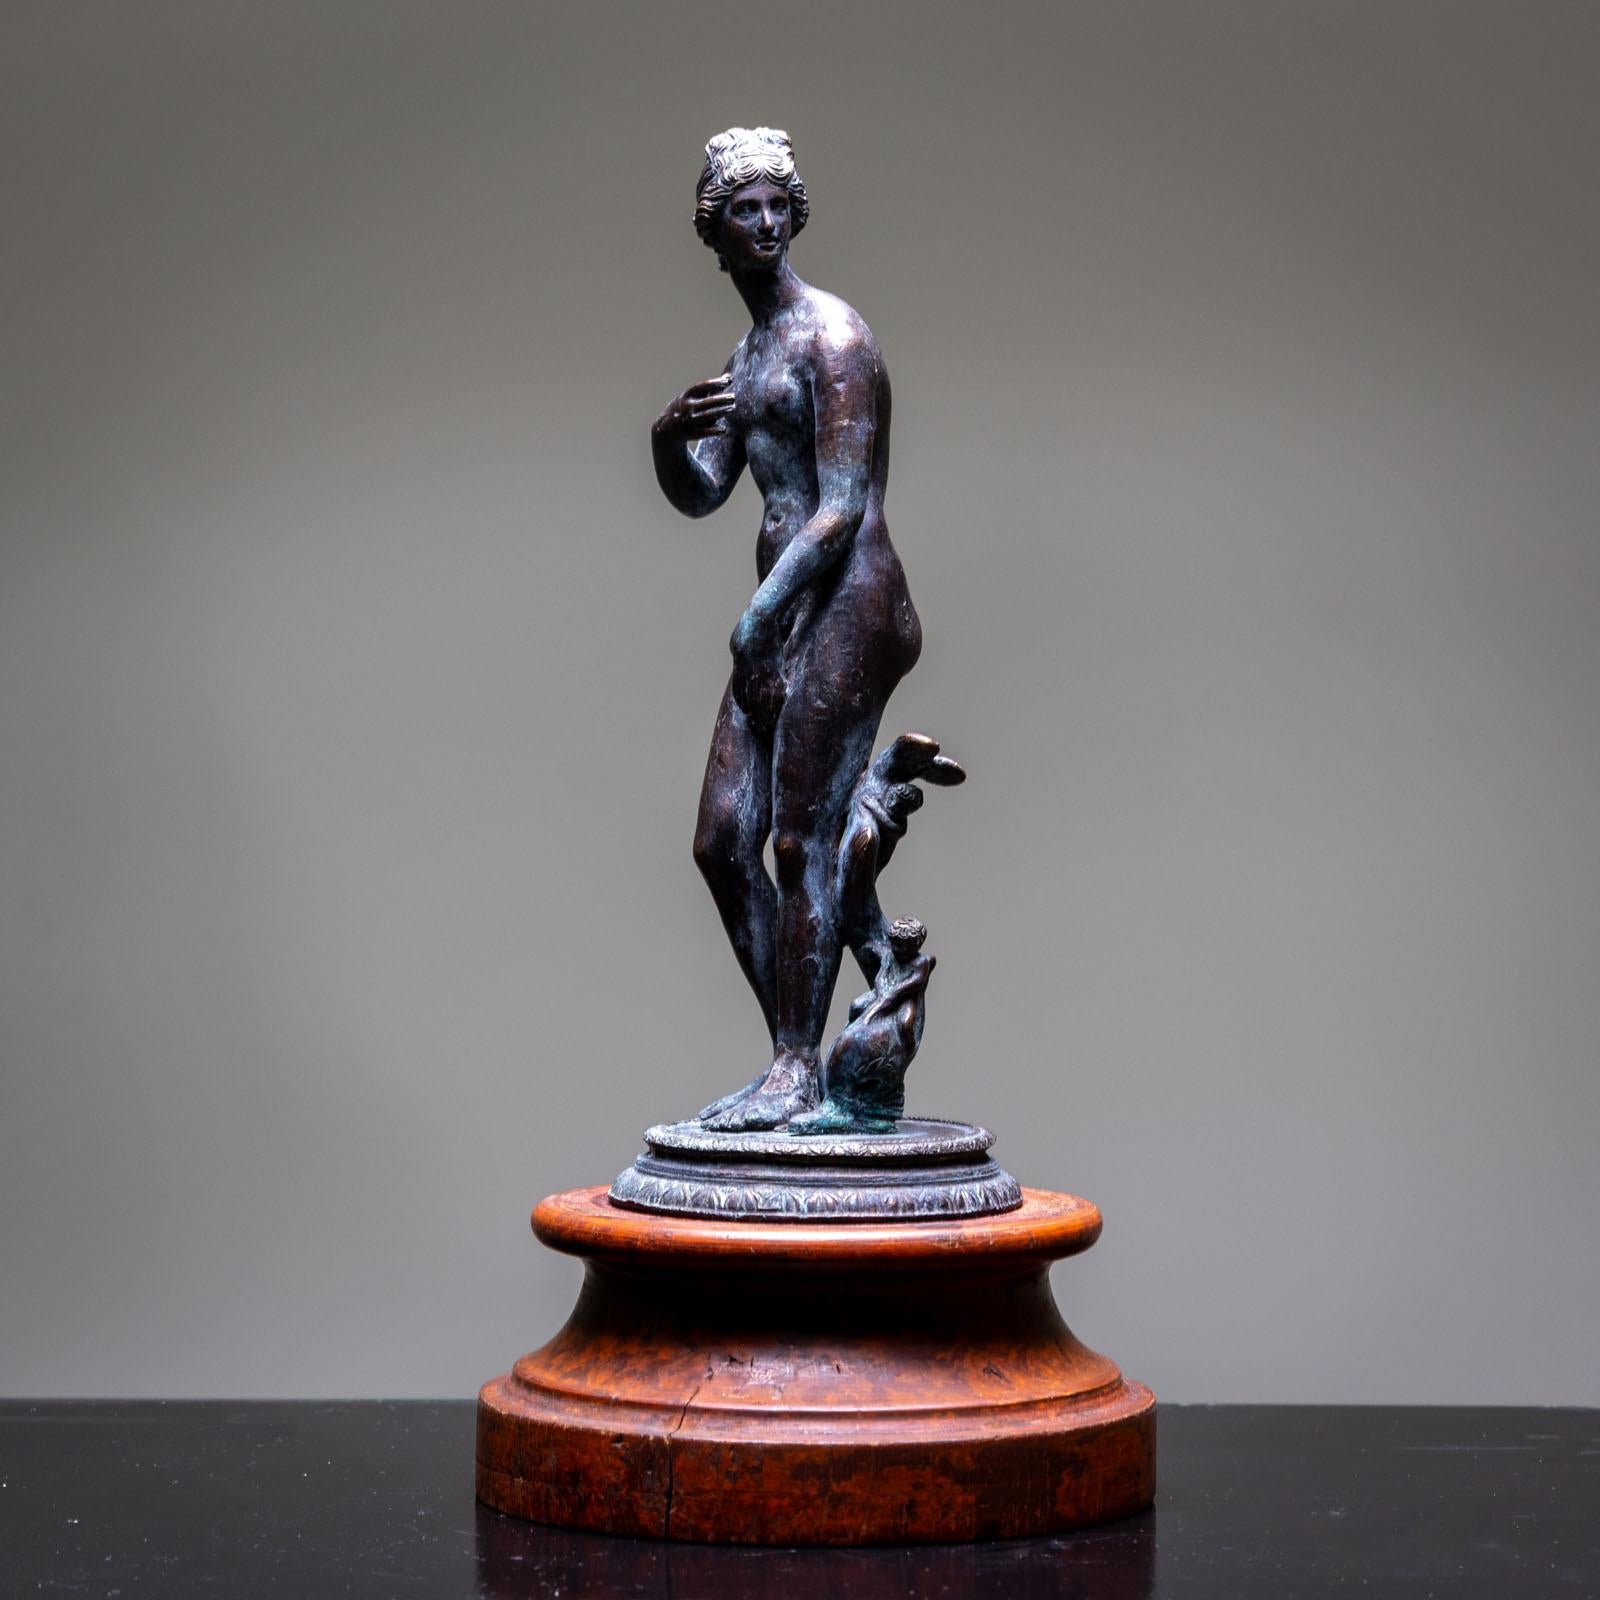 Kleine italienische Bronze von Aphrodite oder Venus auf einem patinierten Holzsockel. Größe der Statuette: 23 cm.